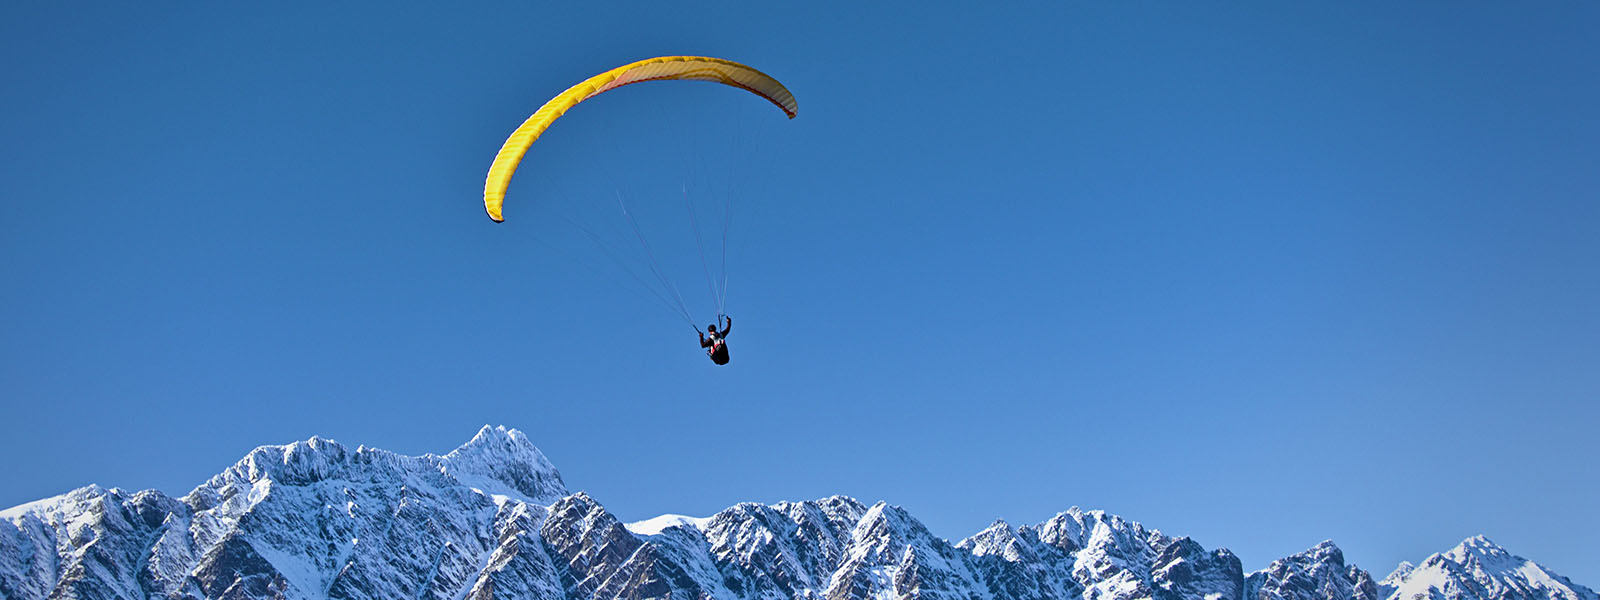 Paraglider above Remarkables range, Queenstown, Otago, New Zealand